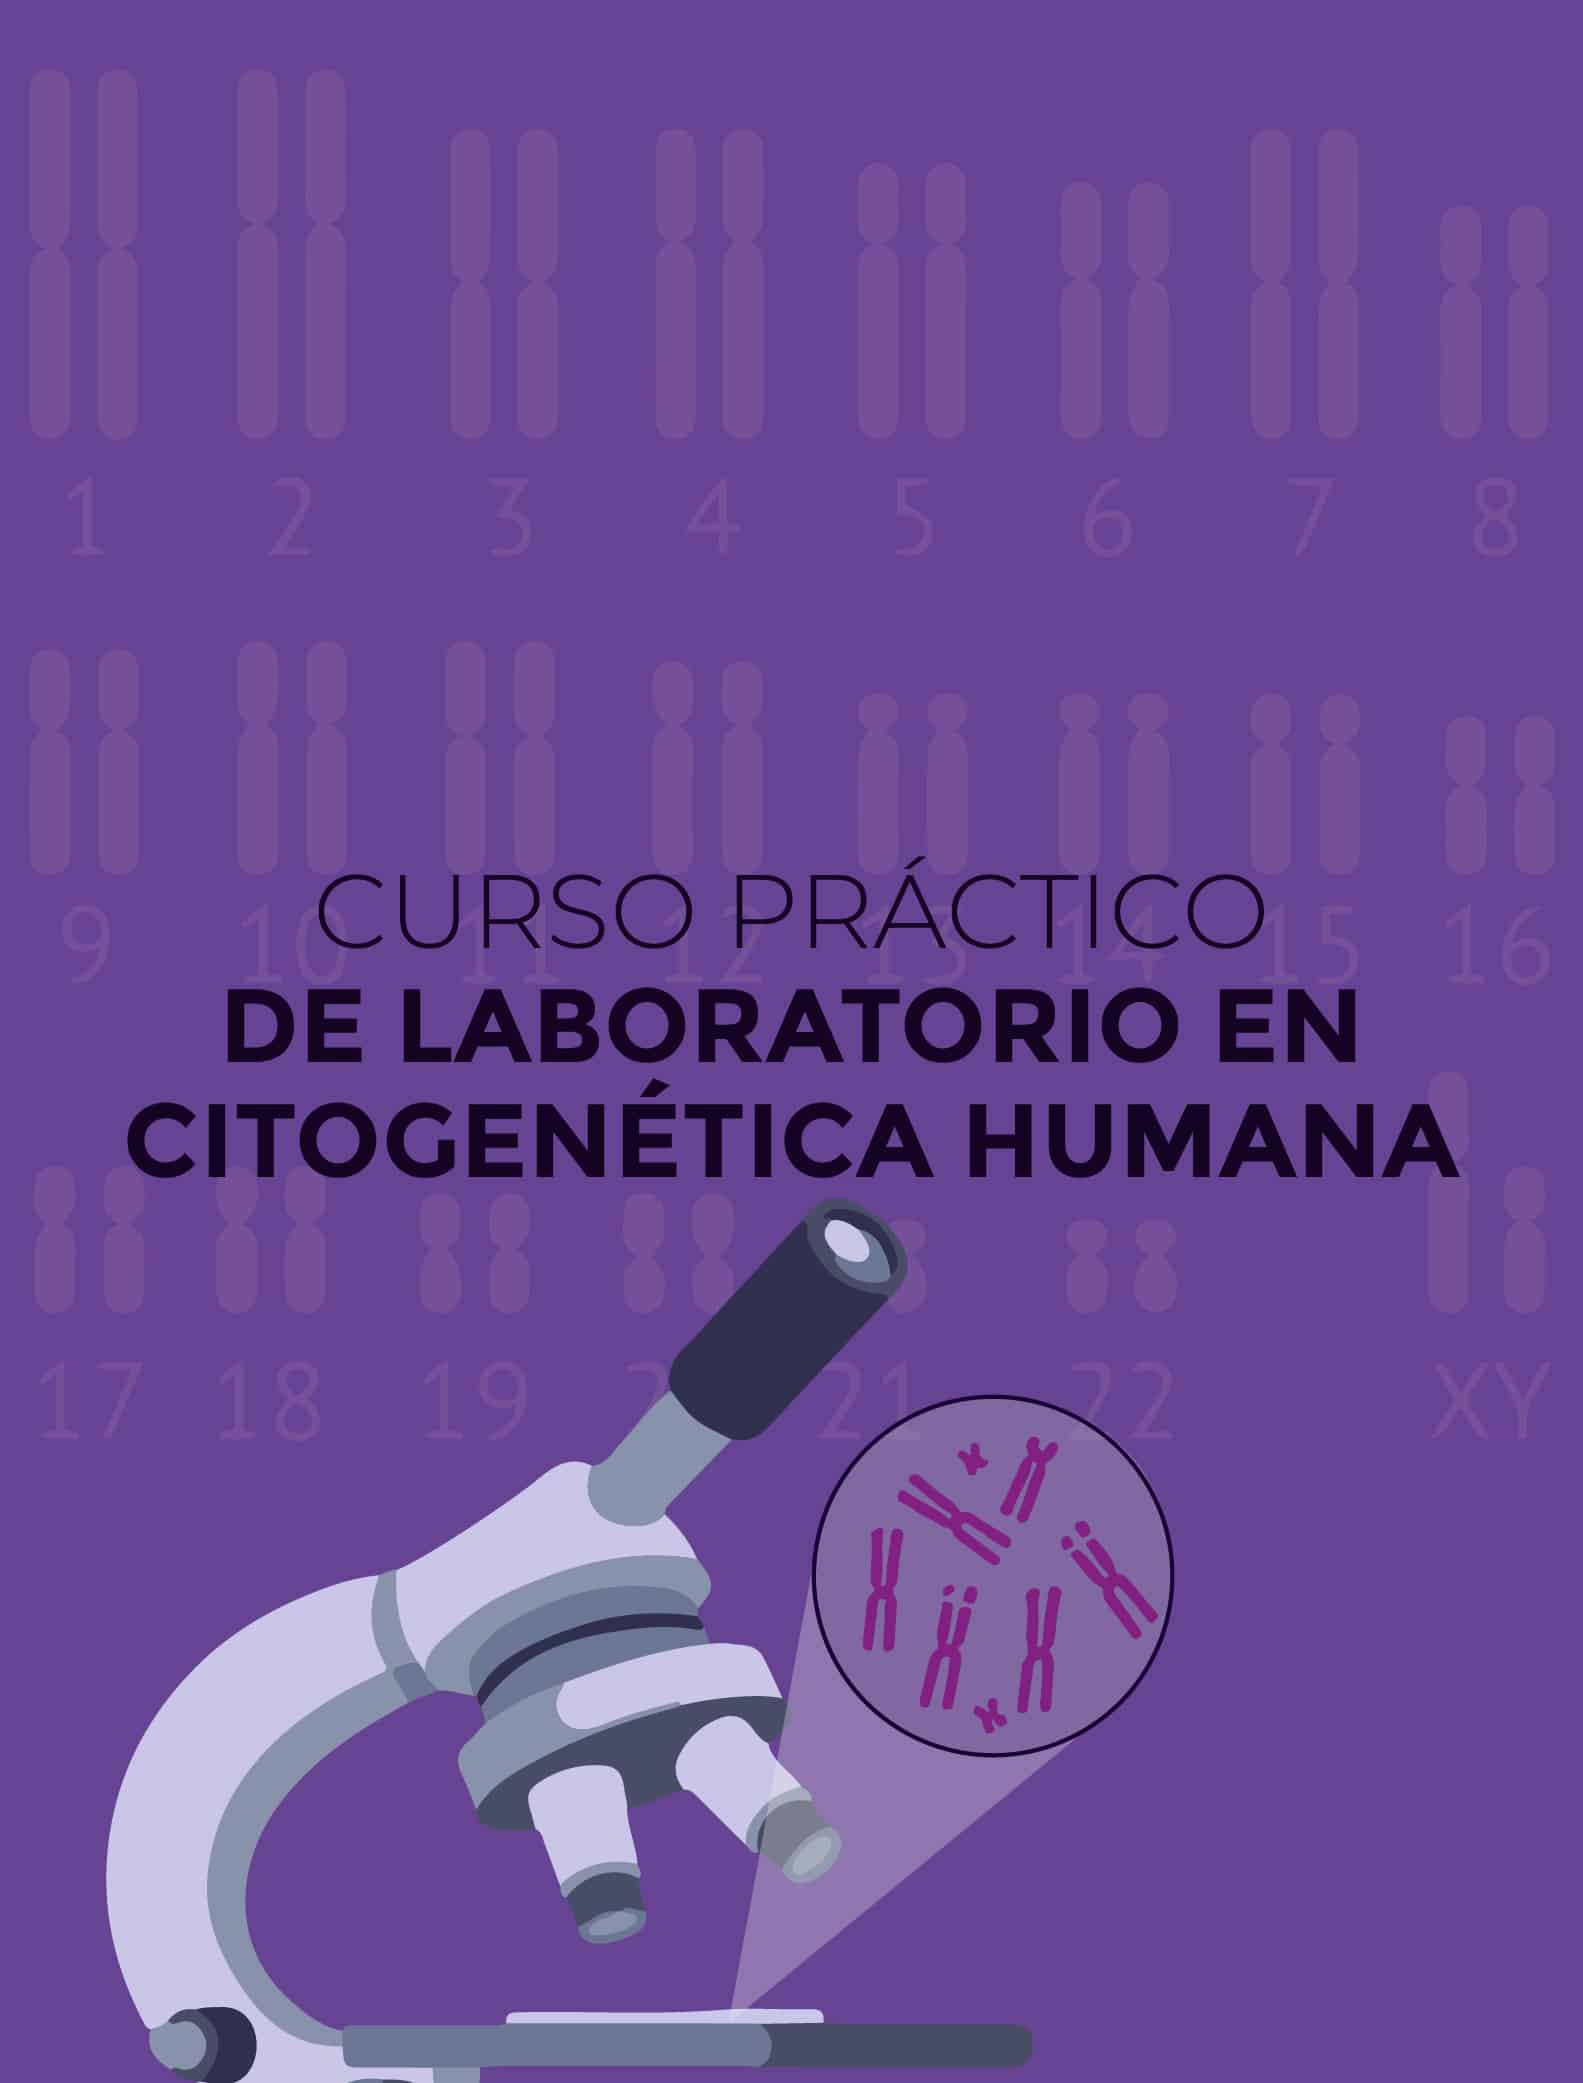 Curso práctico de Laboratorio en Citogenética Humana